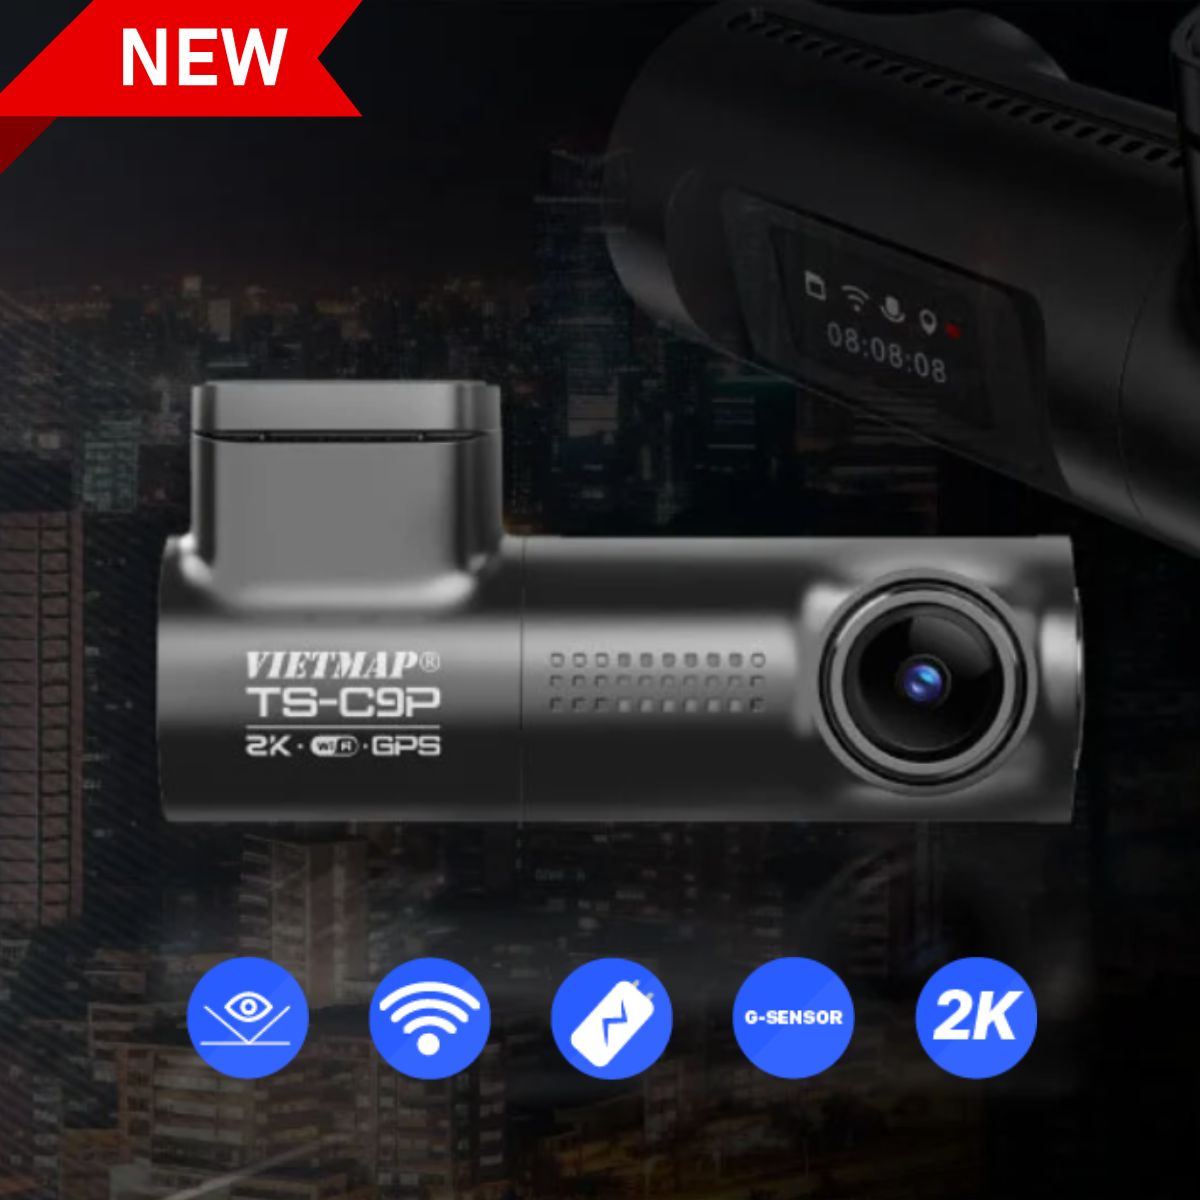 Camera giám sát hành trình 2K Super HD Vietmap TS-C9P Cảm biến G-Sensor, màn hình LCD 0,96 inch, chip GPS